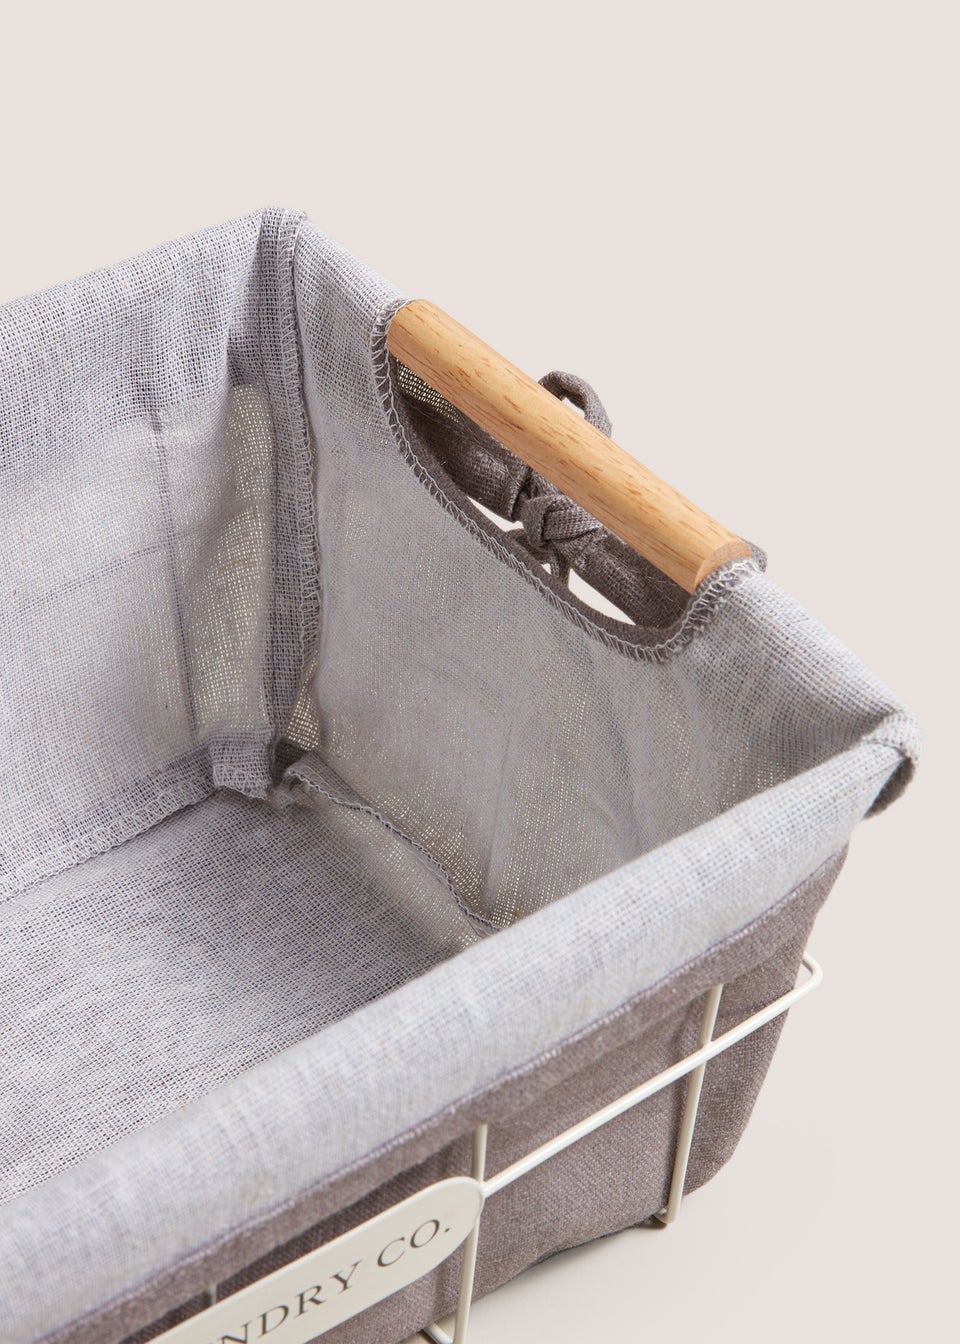 Laundry Co Grey Storage Fabric Wire Basket (32cm x 22cm x 14cm)